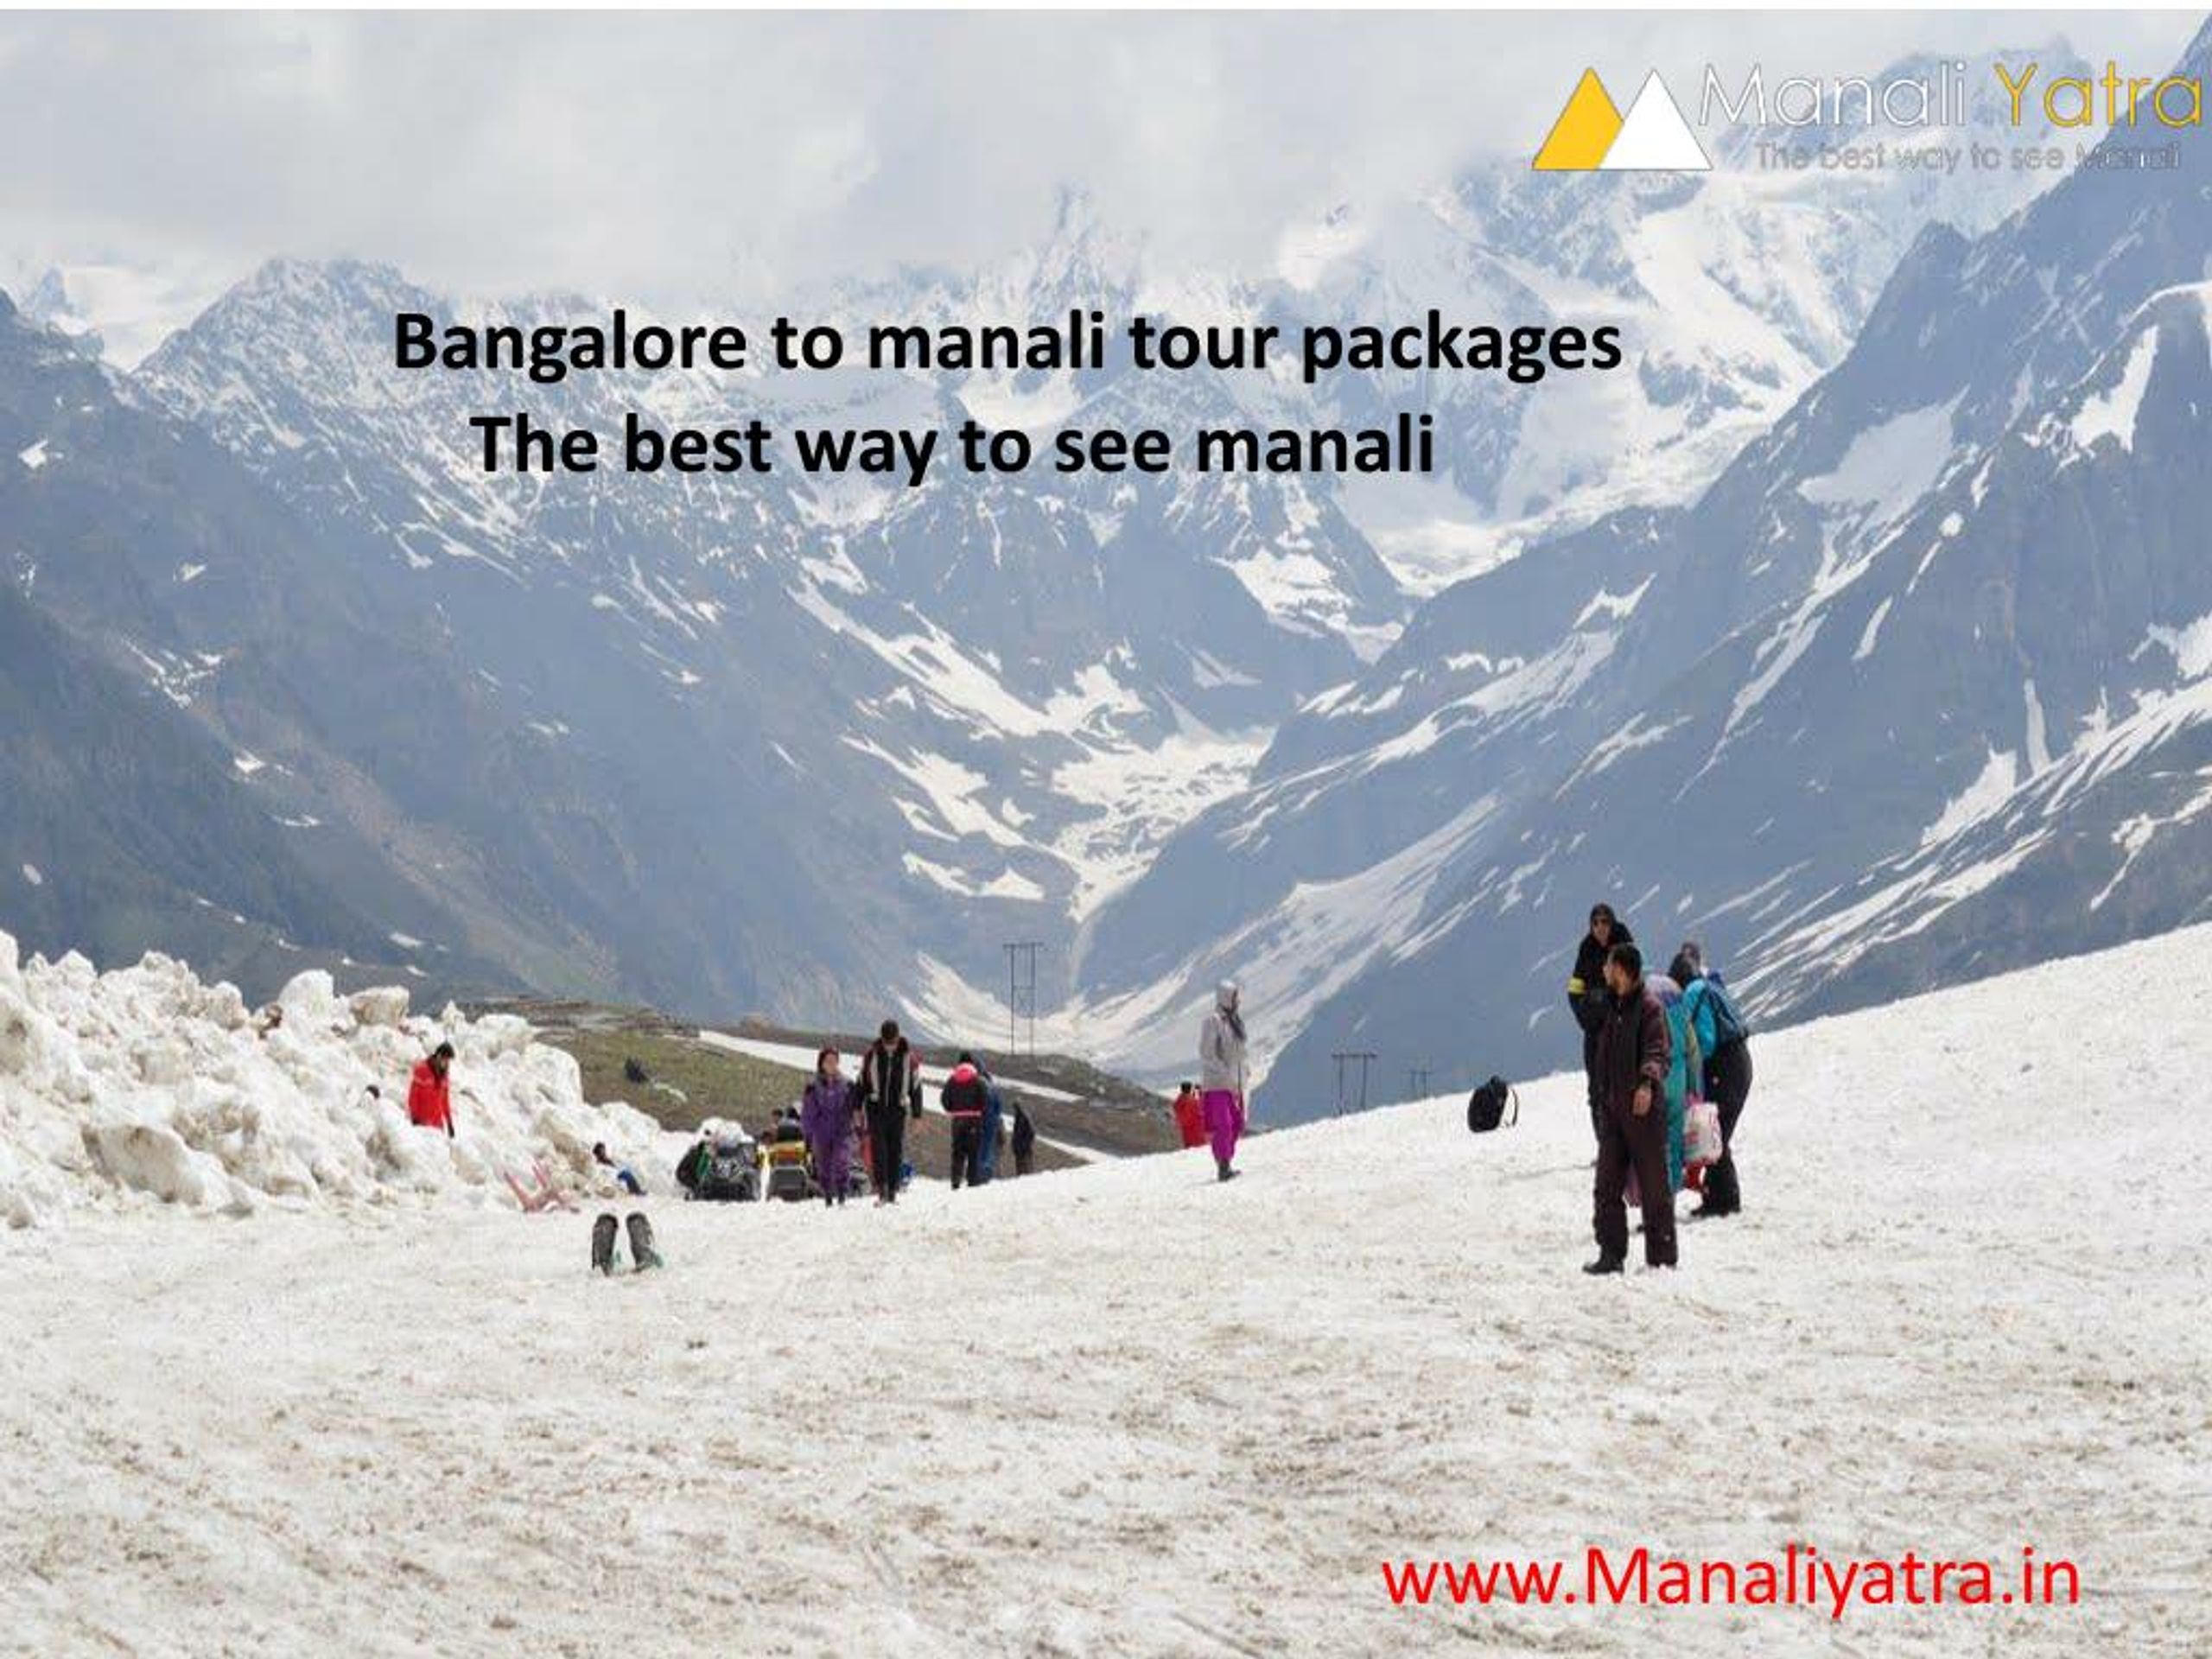 manali trip plan from bangalore